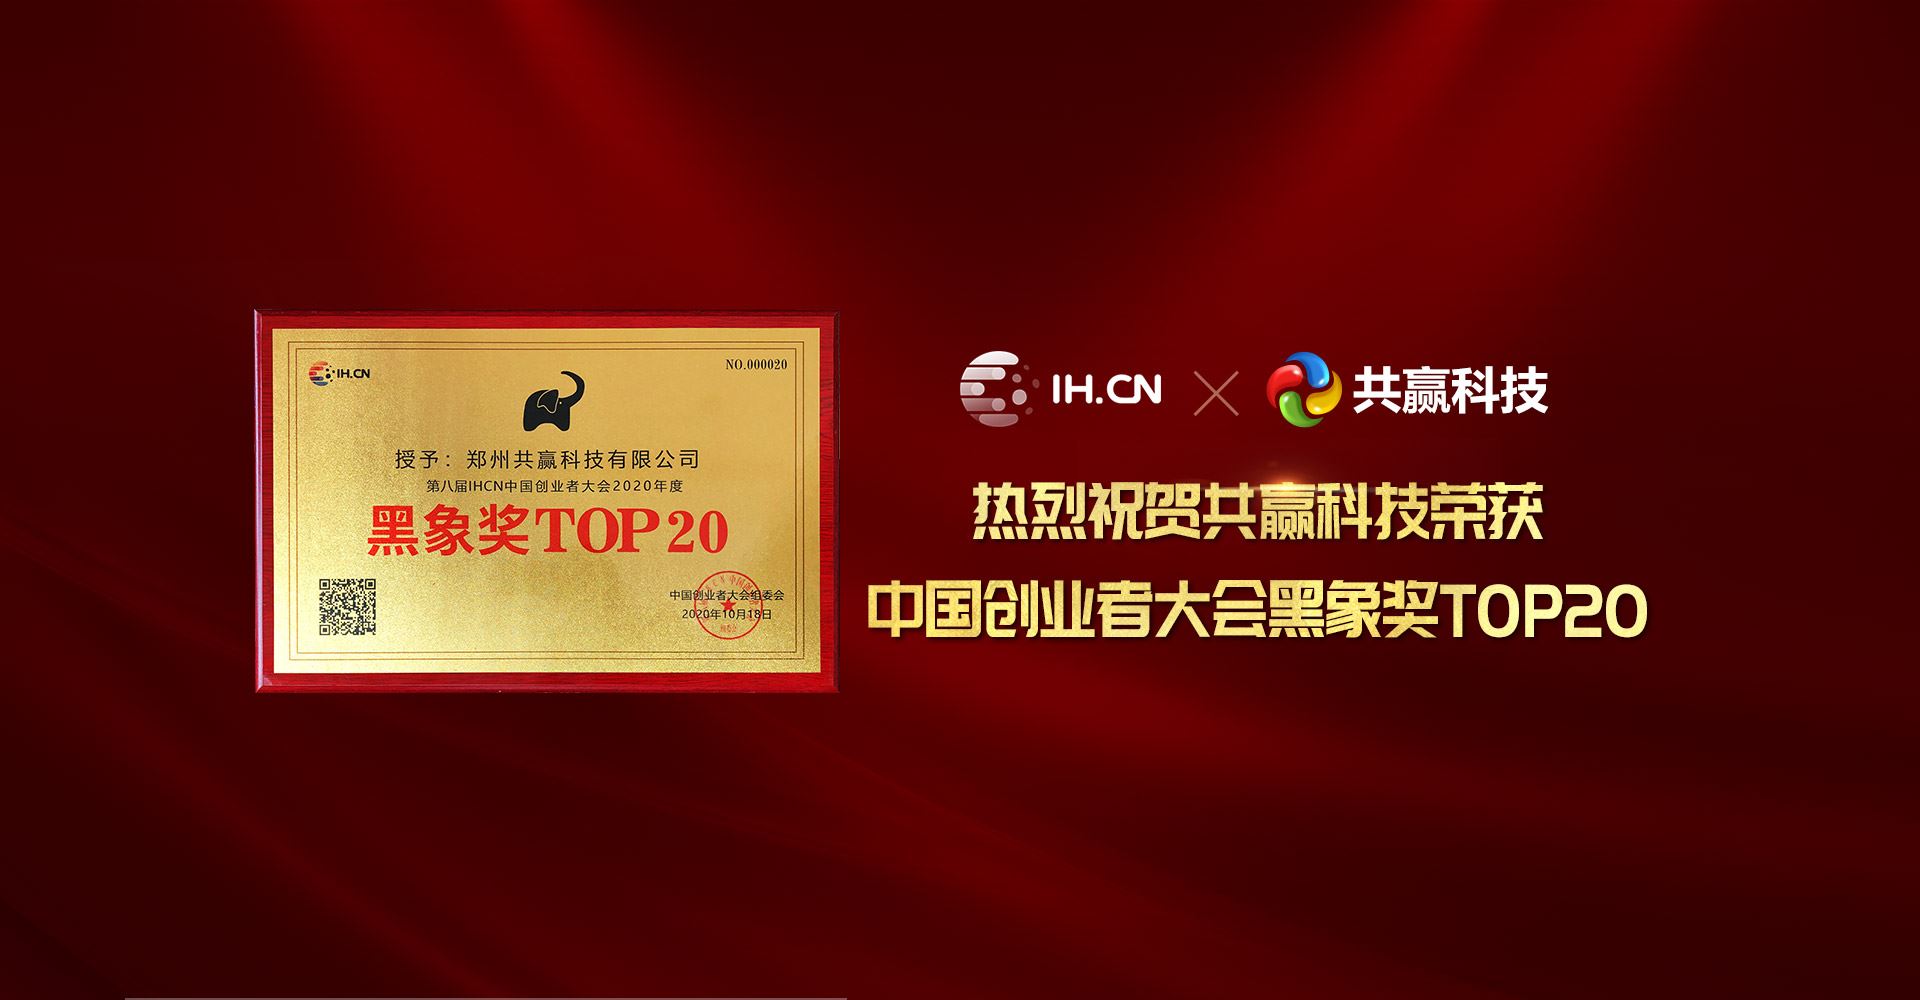 热烈祝贺果博东方的网站荣获中国创业者大会黑象奖TOP20